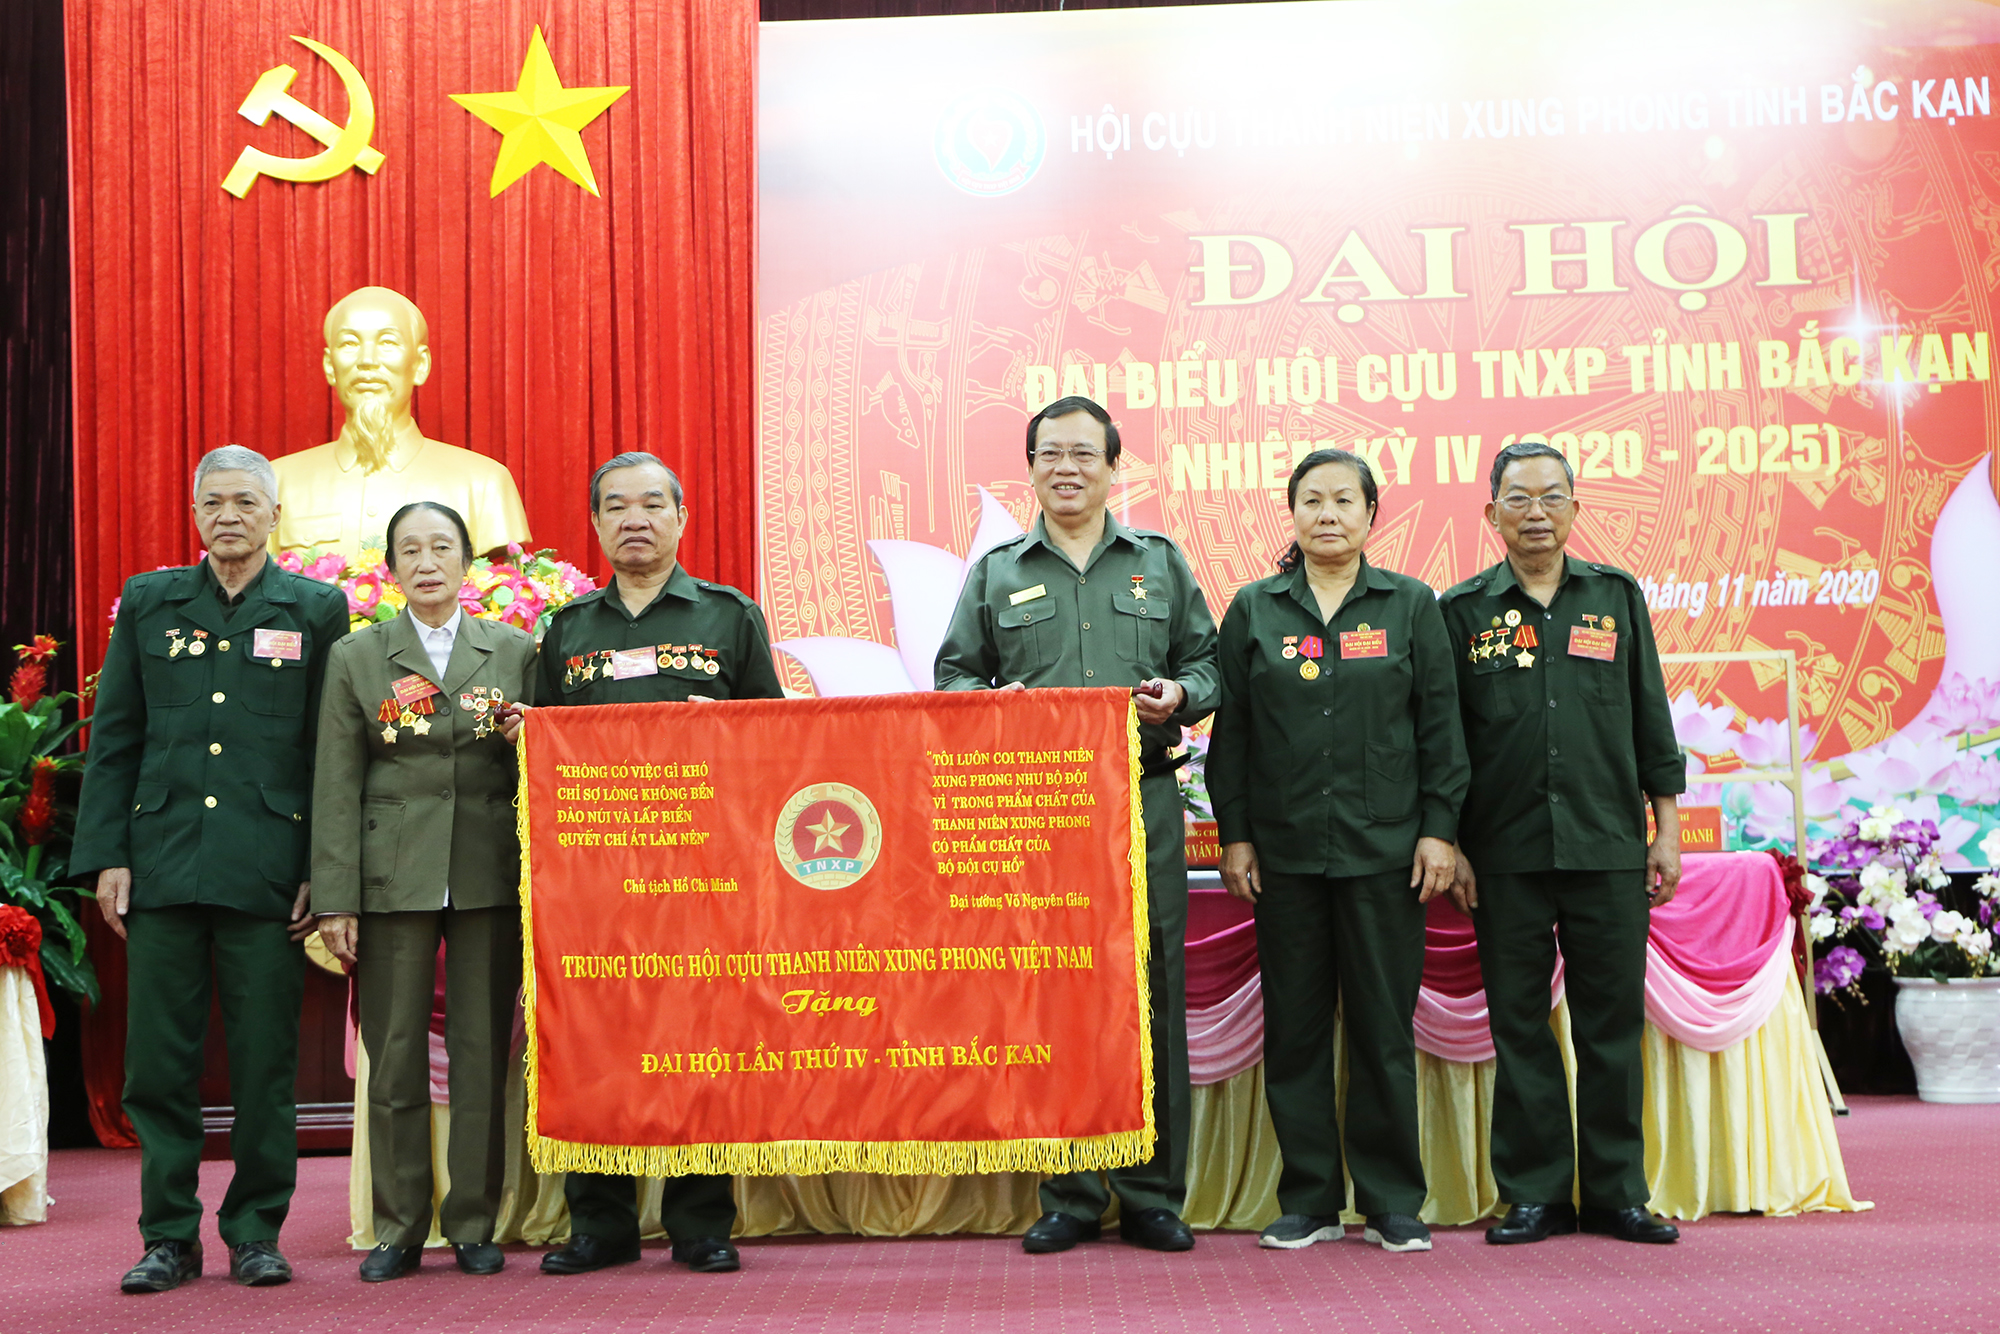 Đ/c Vũ Trọng Kim - Chủ tịch Hội Cựu TNXP Việt Nam trao tặng bức trướng cho Đại hội. Ảnh: TT